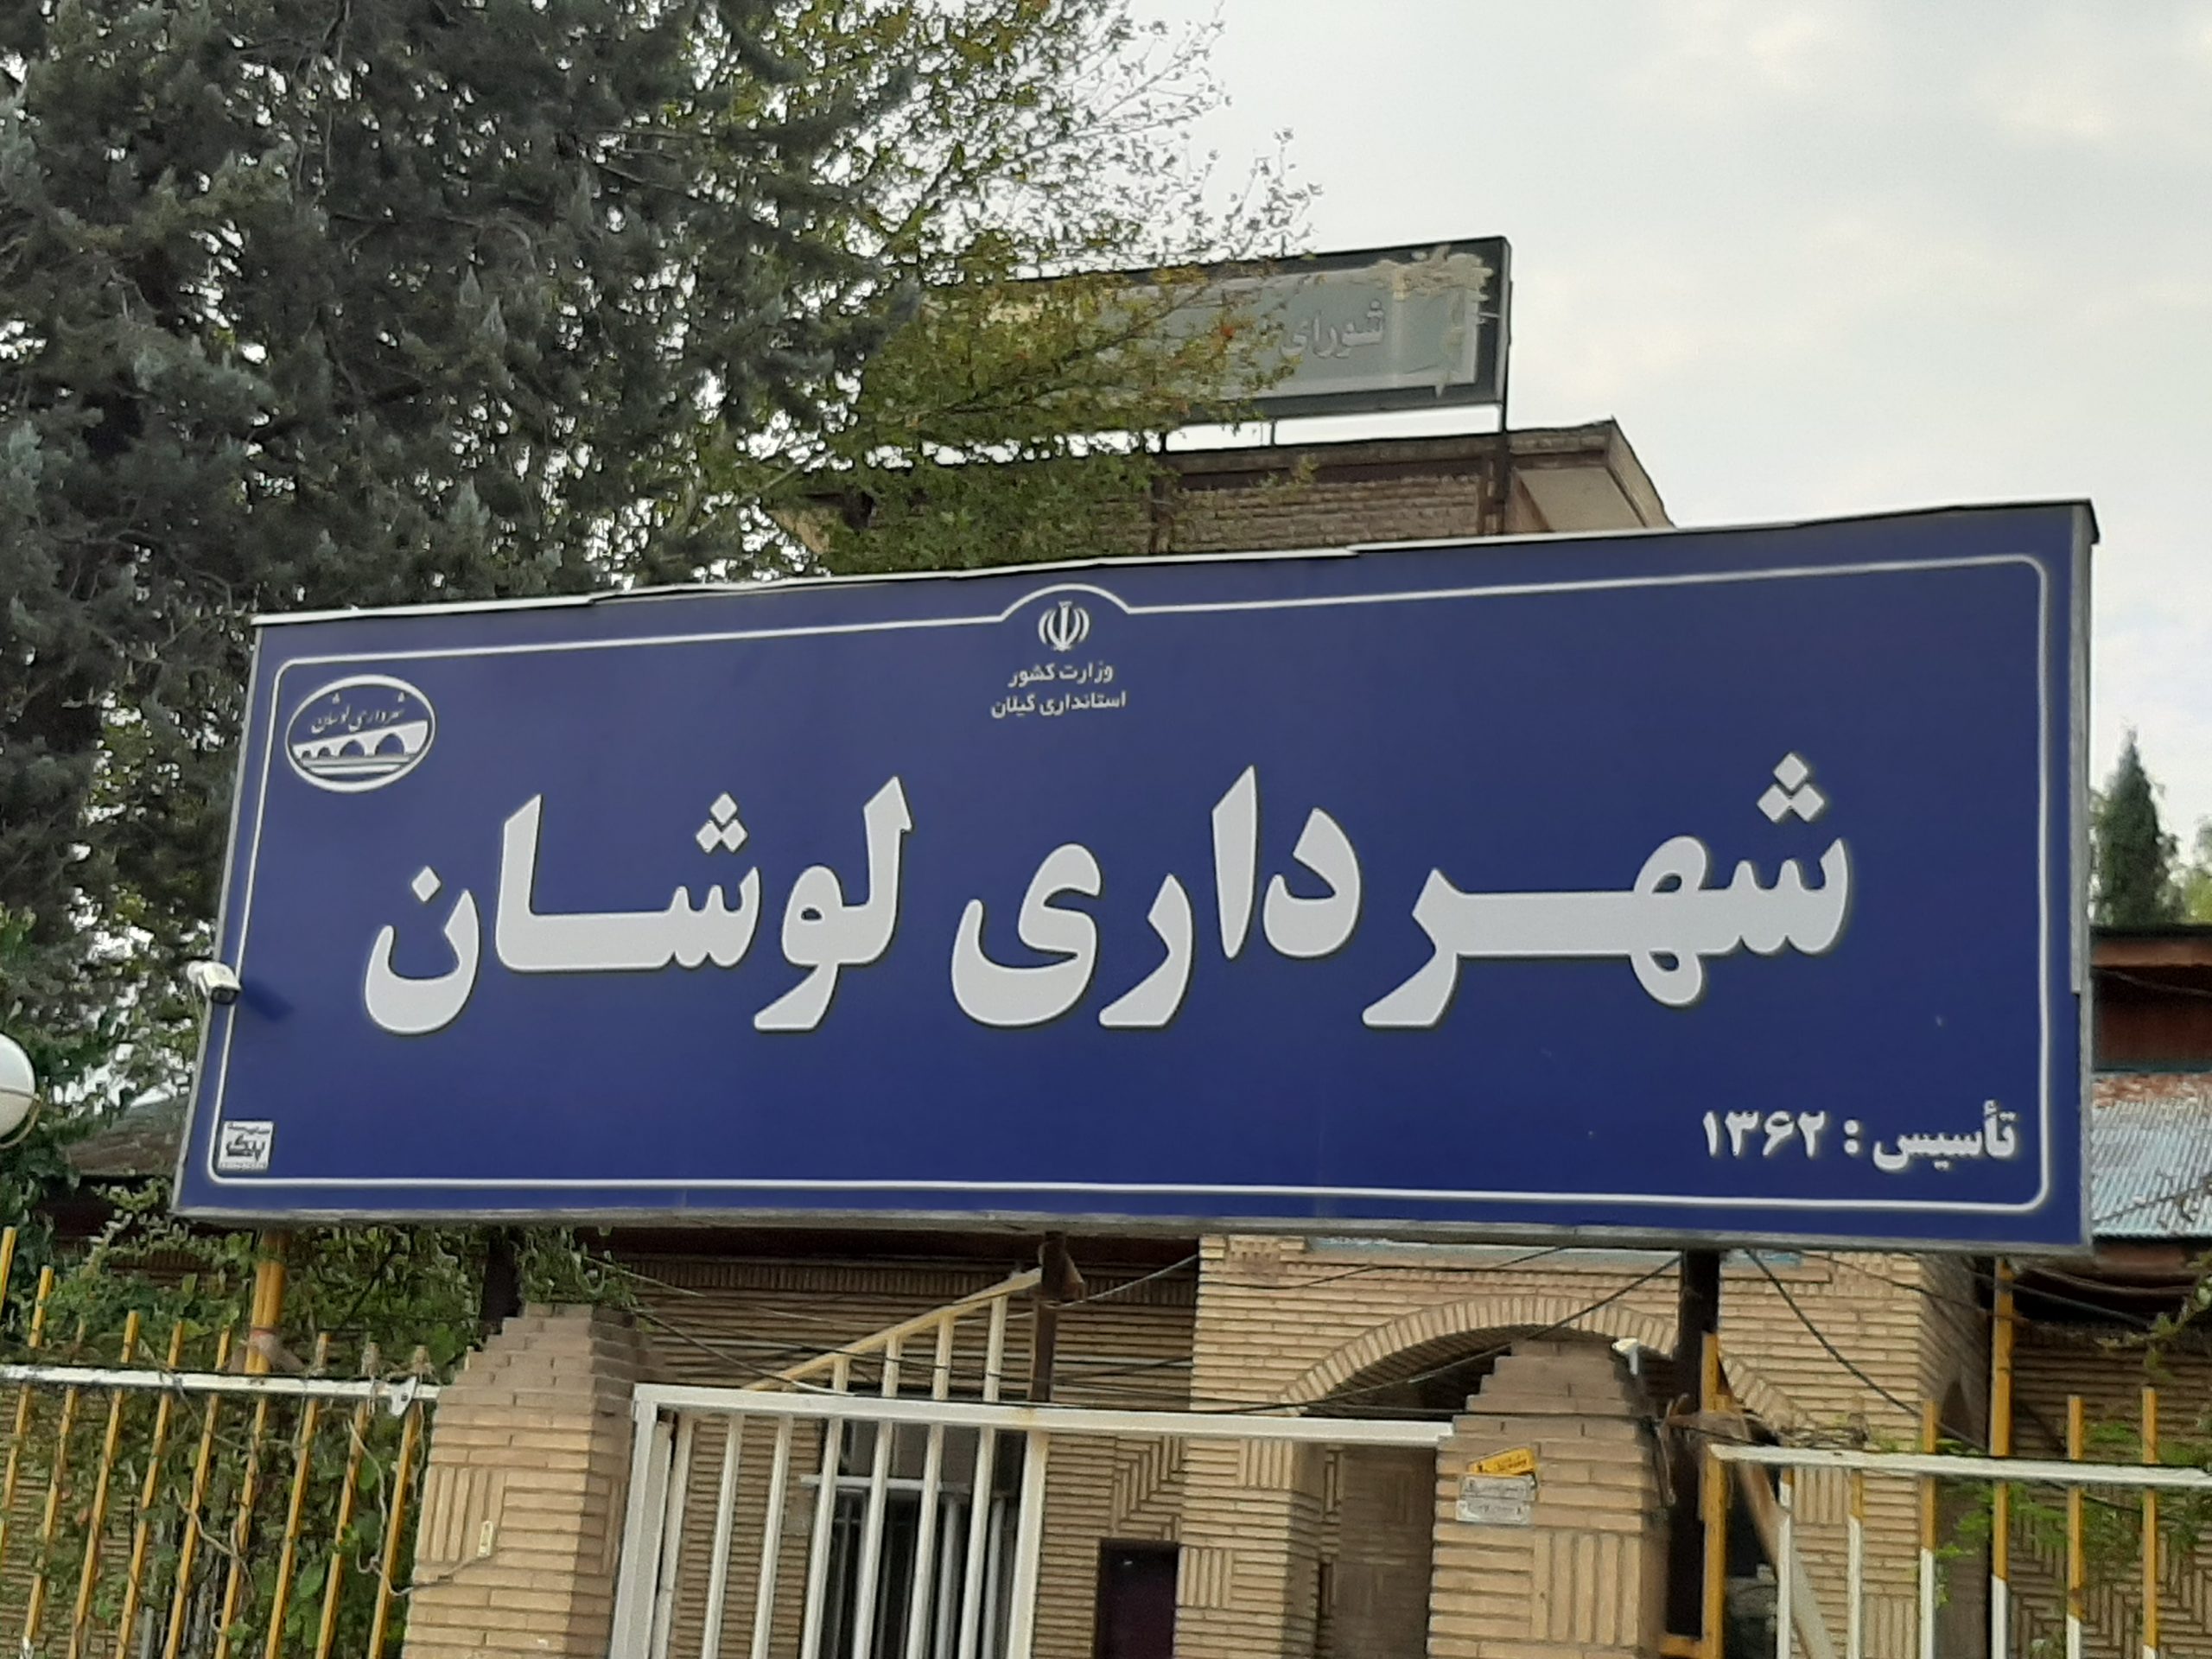 پورتال شهرداری و شورای اسلامی شهر لوشان